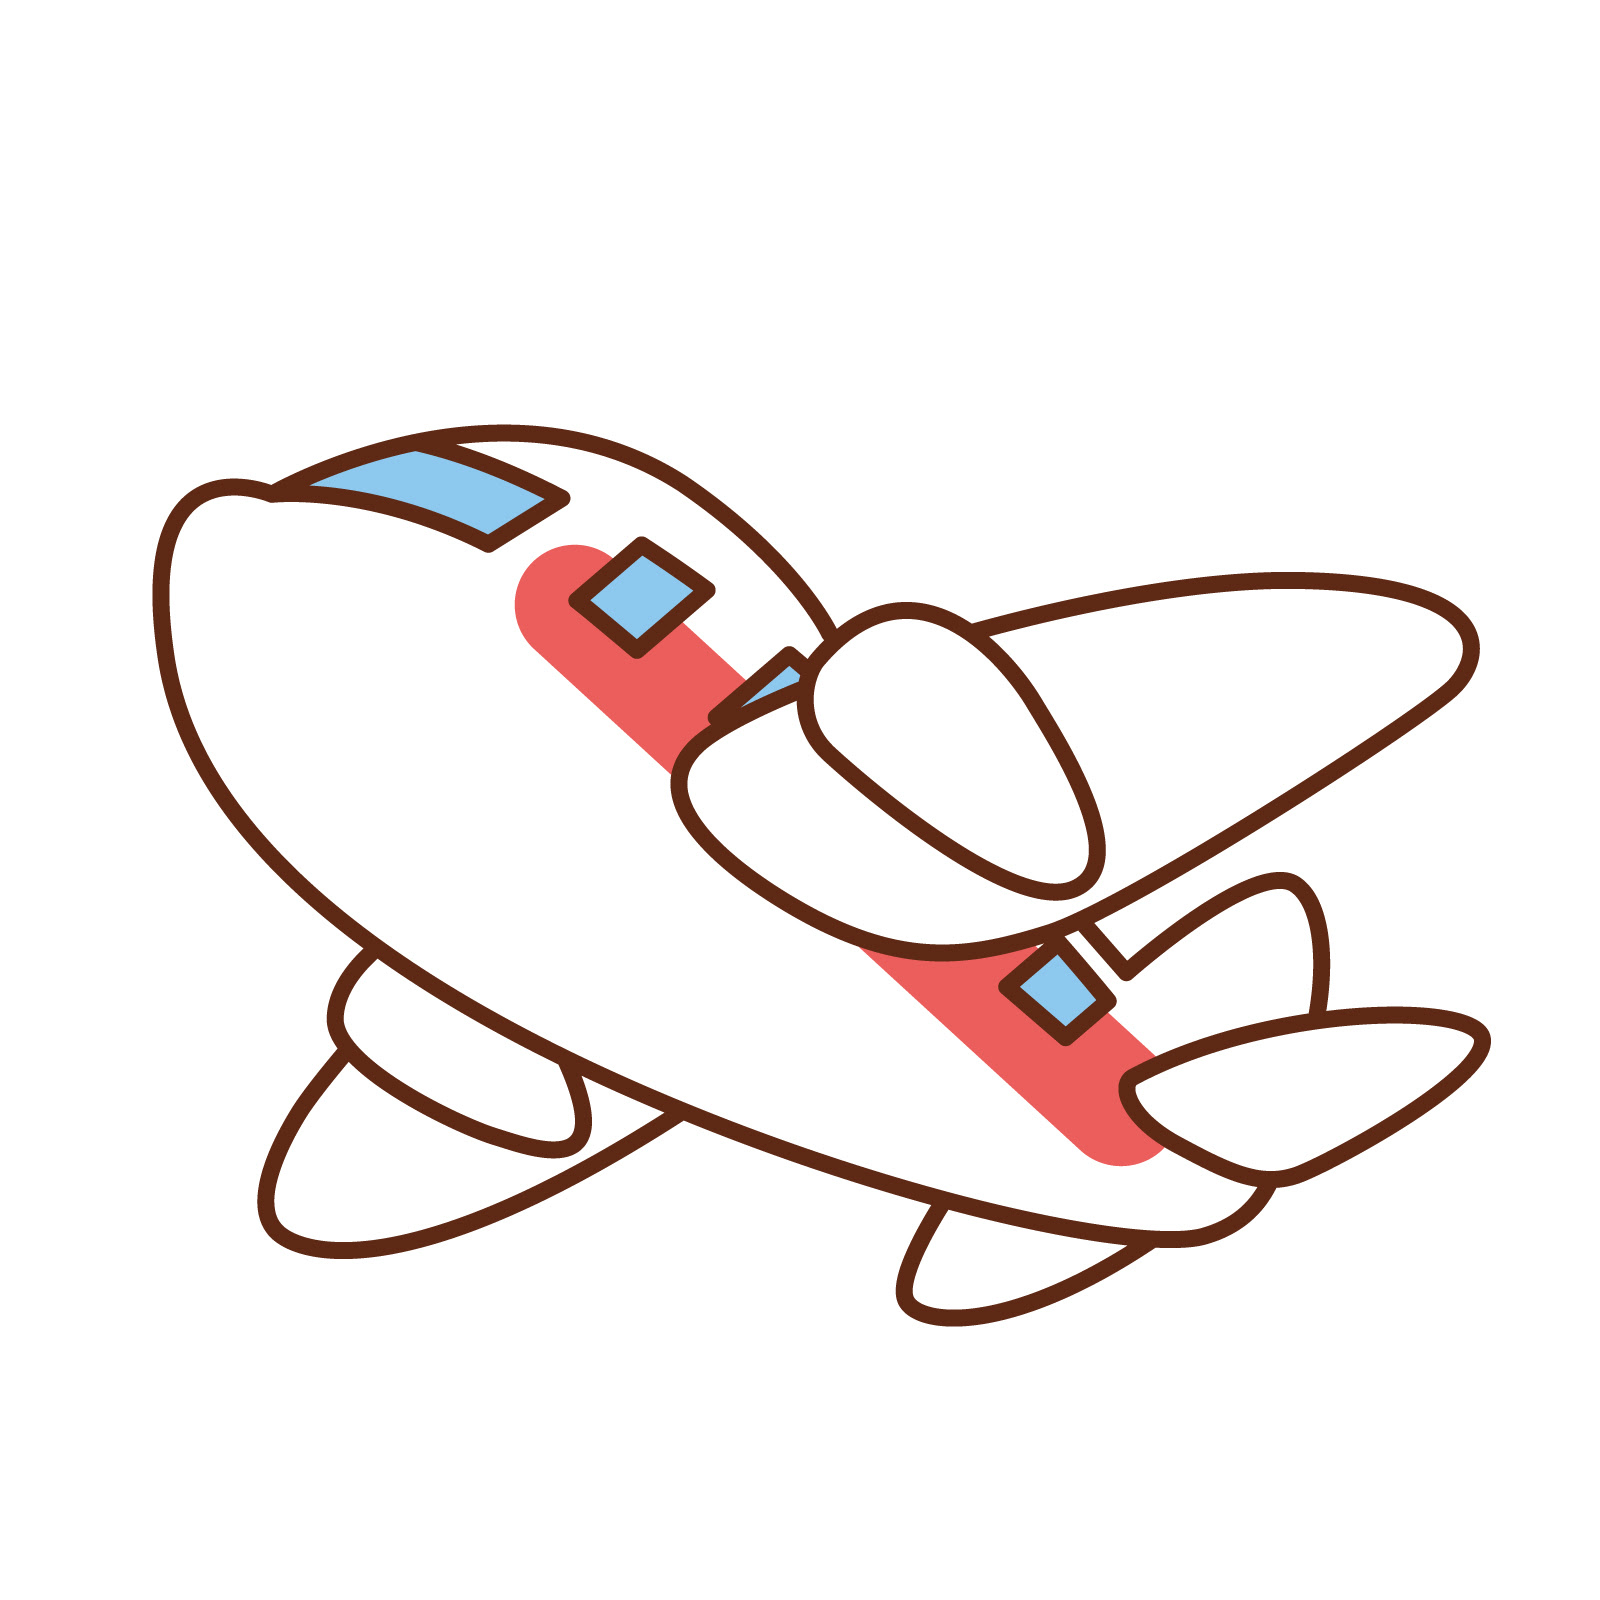 上飛行機 可愛い イラスト アニメ画像について